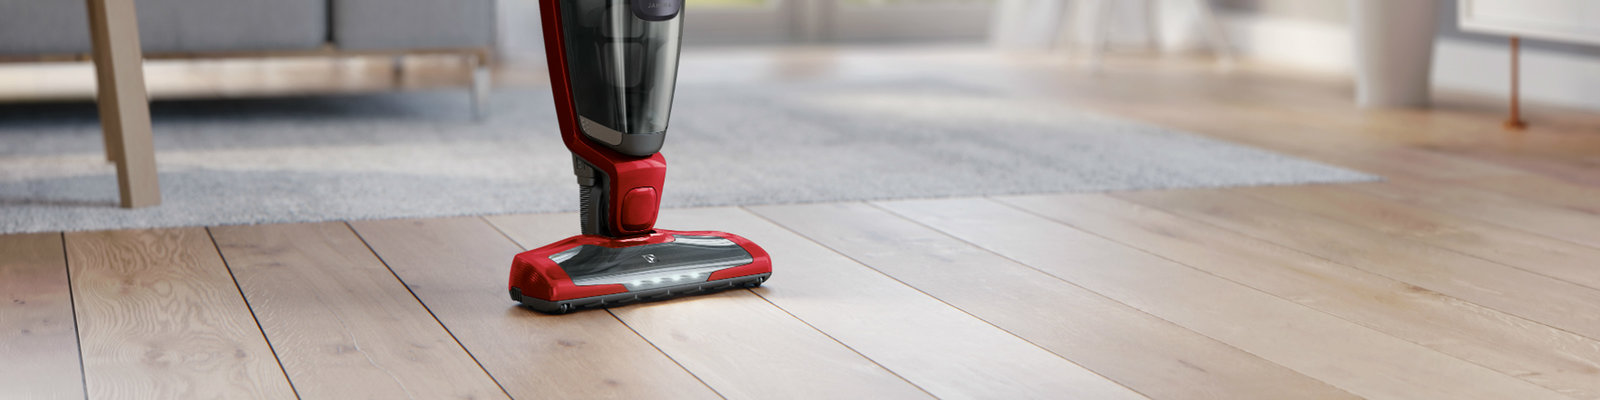 Best Vacuum Cleaner For Hard Floors And, Best Cordless Vacuum For Tile Floors Australia